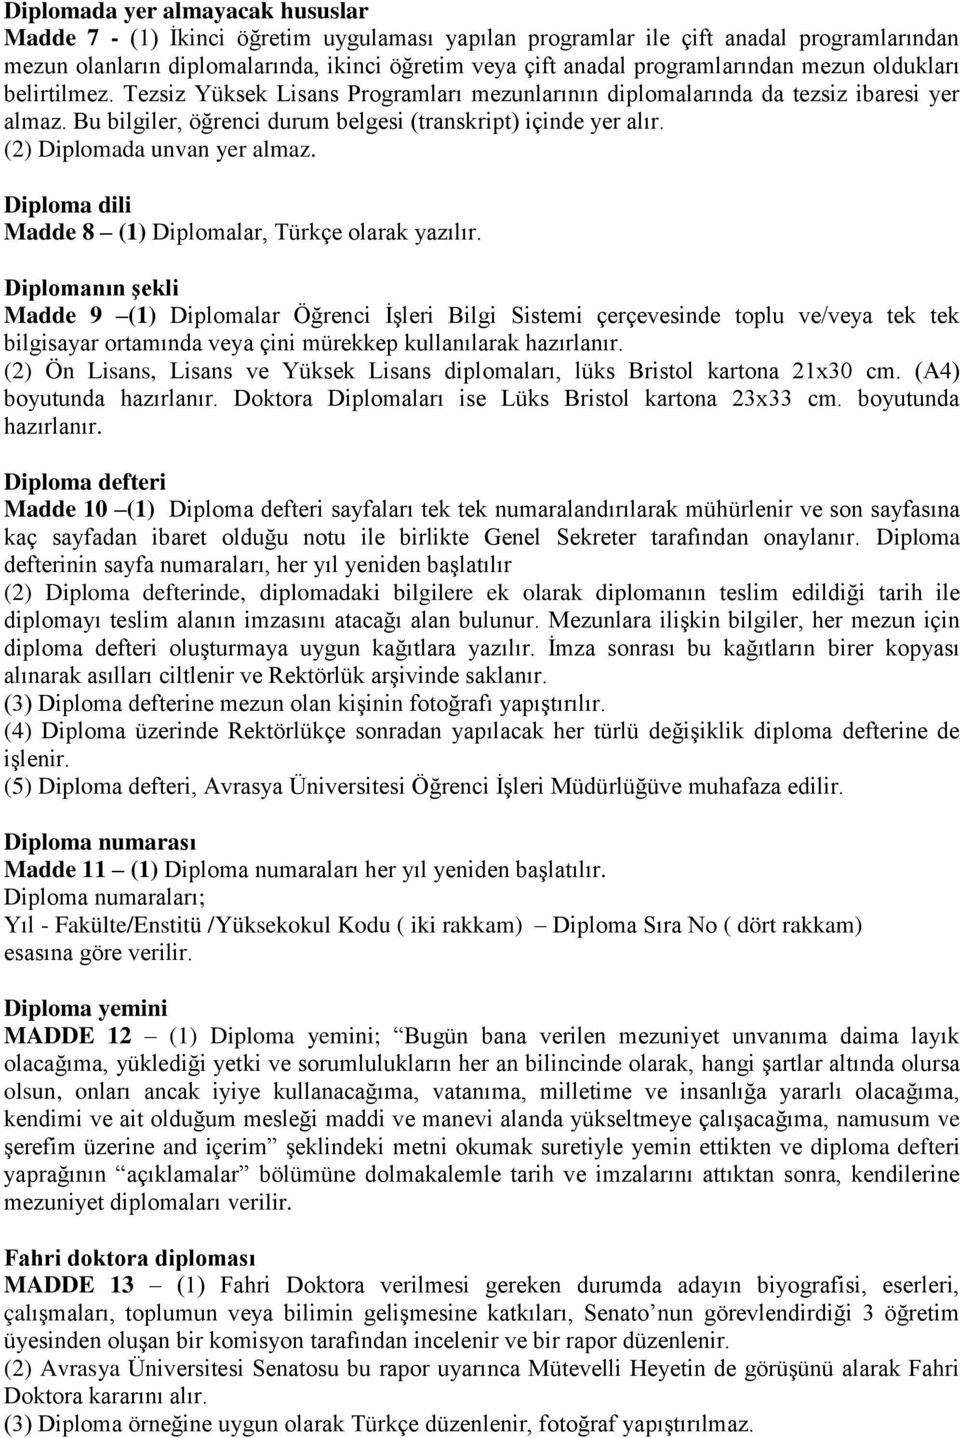 (2) Diplomada unvan yer almaz. Diploma dili Madde 8 (1) Diplomalar, Türkçe olarak yazılır.